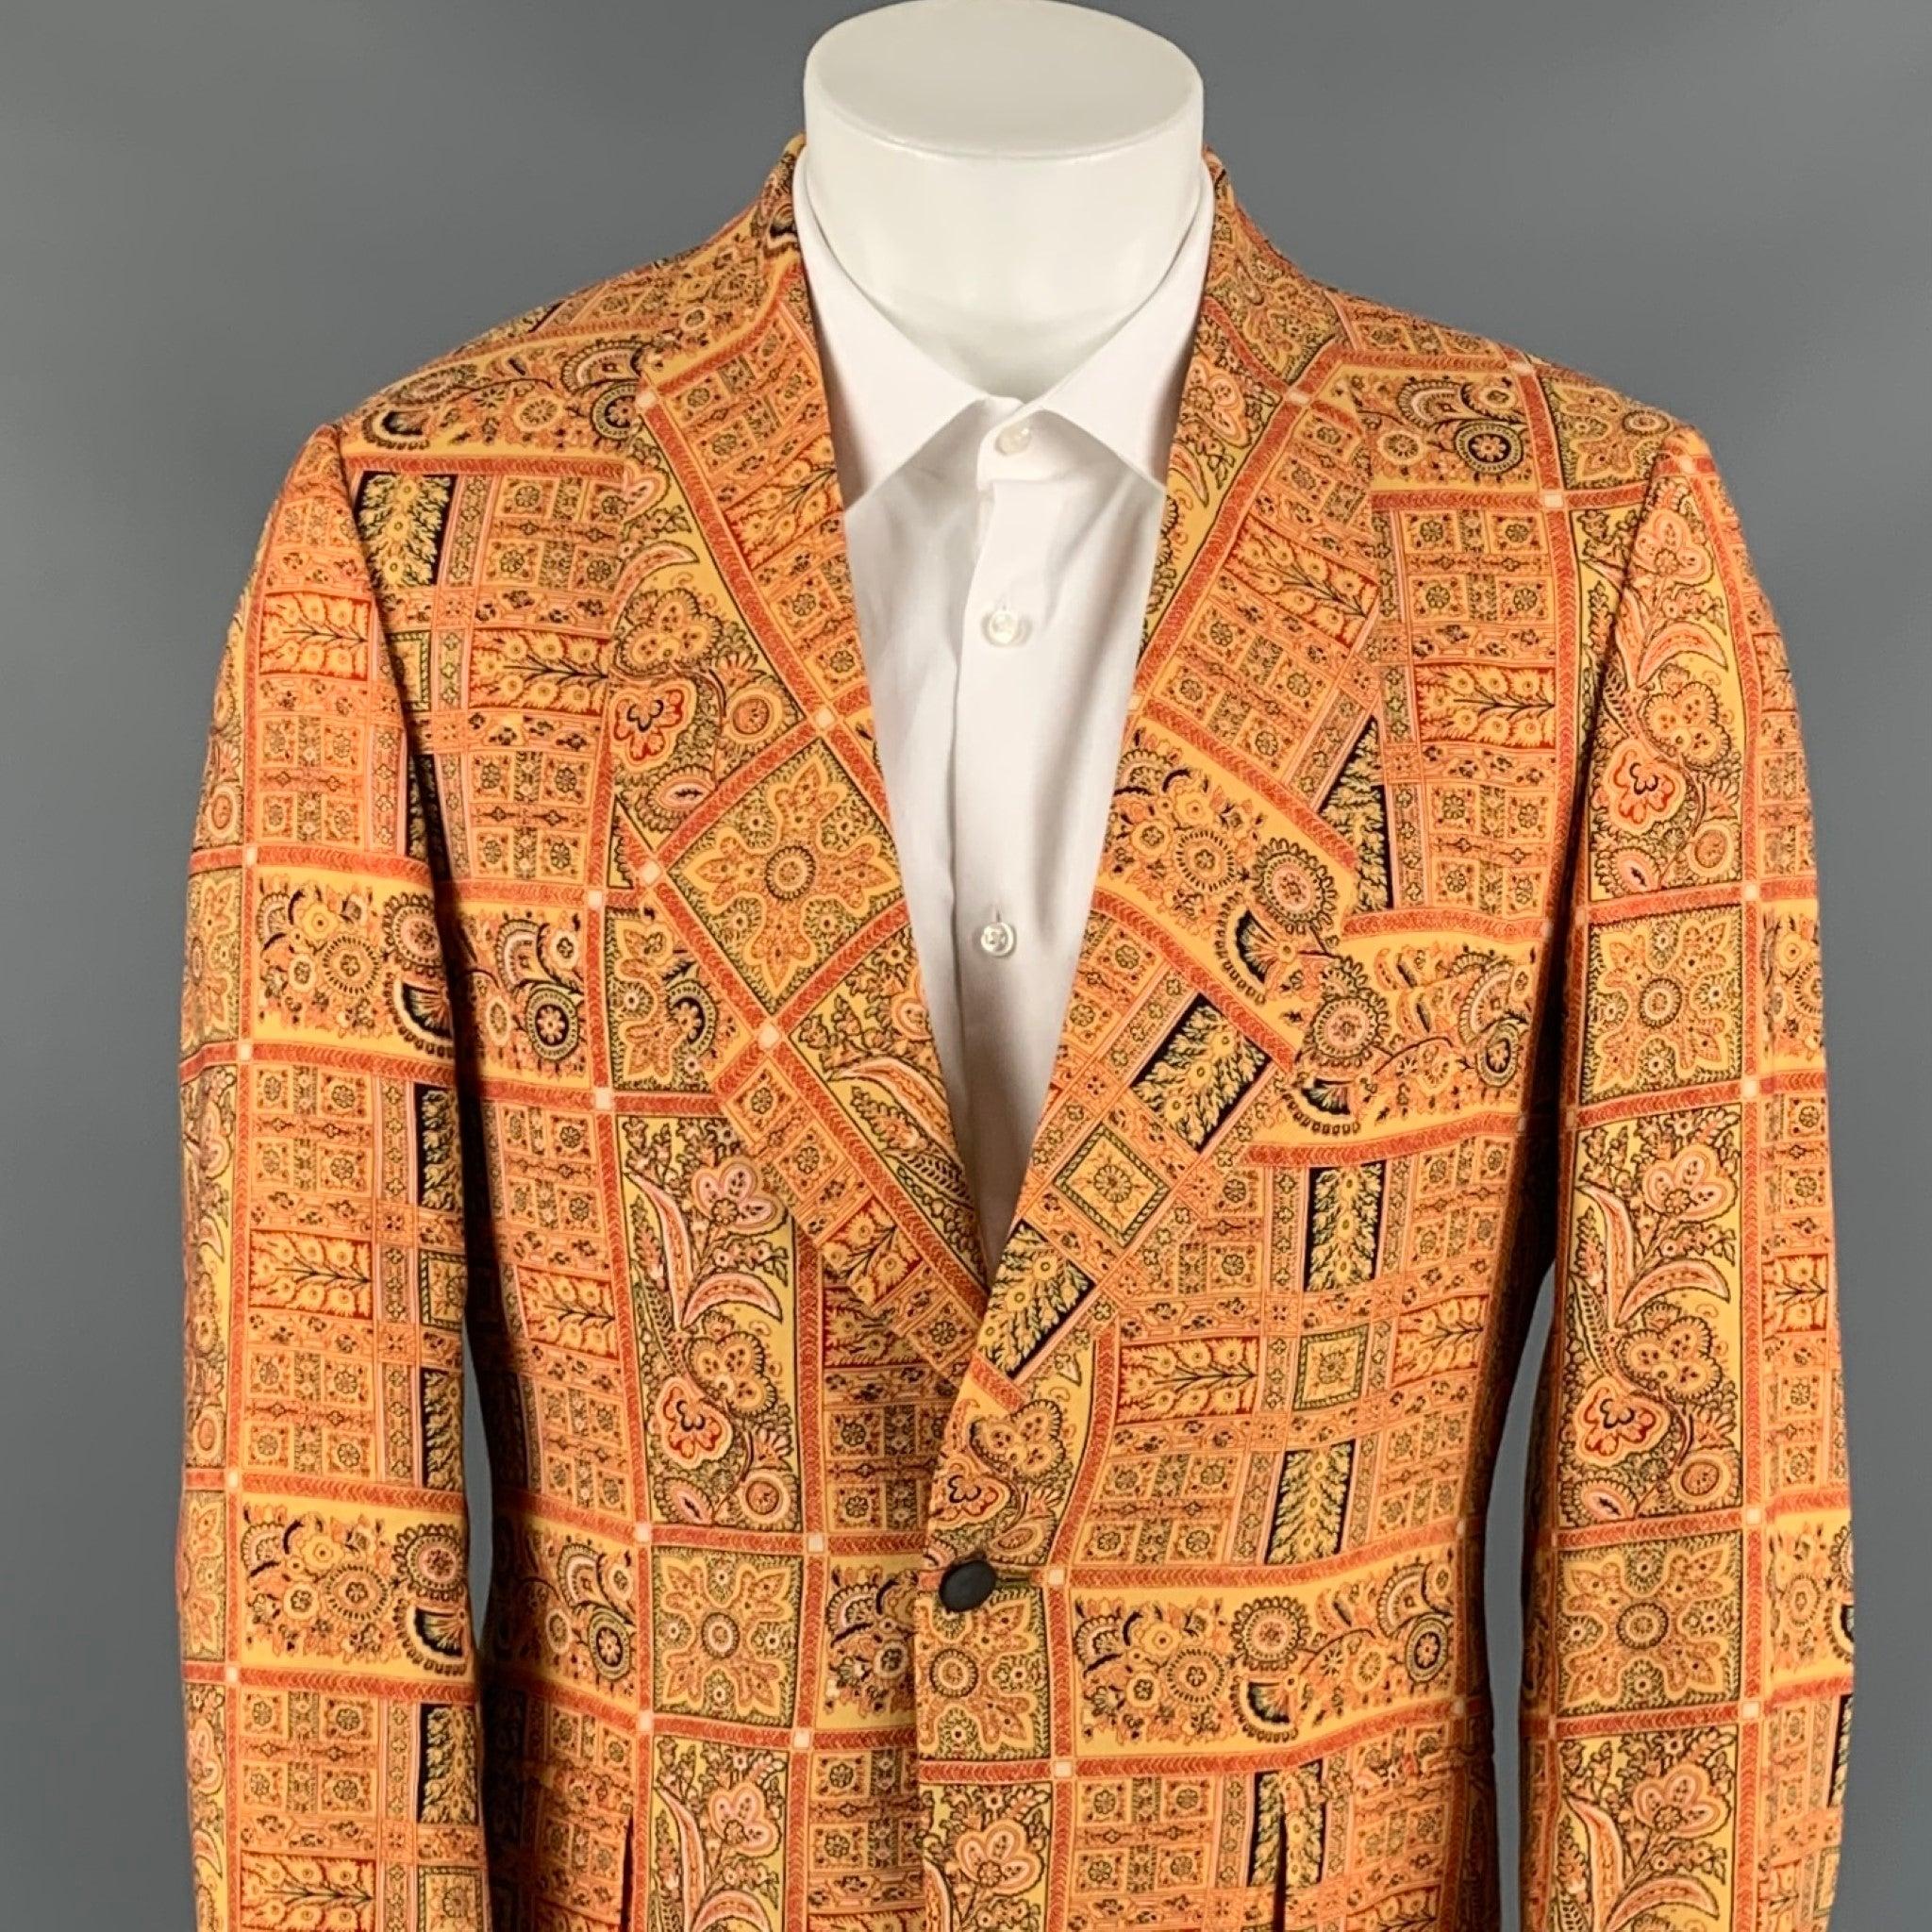 Le manteau de sport SAKS FIFTH AVENUE est en laine mélangée imprimée or et rouge, avec une doublure complète, un col châle, une seule fente au dos, des poches à rabat et une fermeture à bouton unique. Fabriqué aux États-Unis. Très bien
Etat